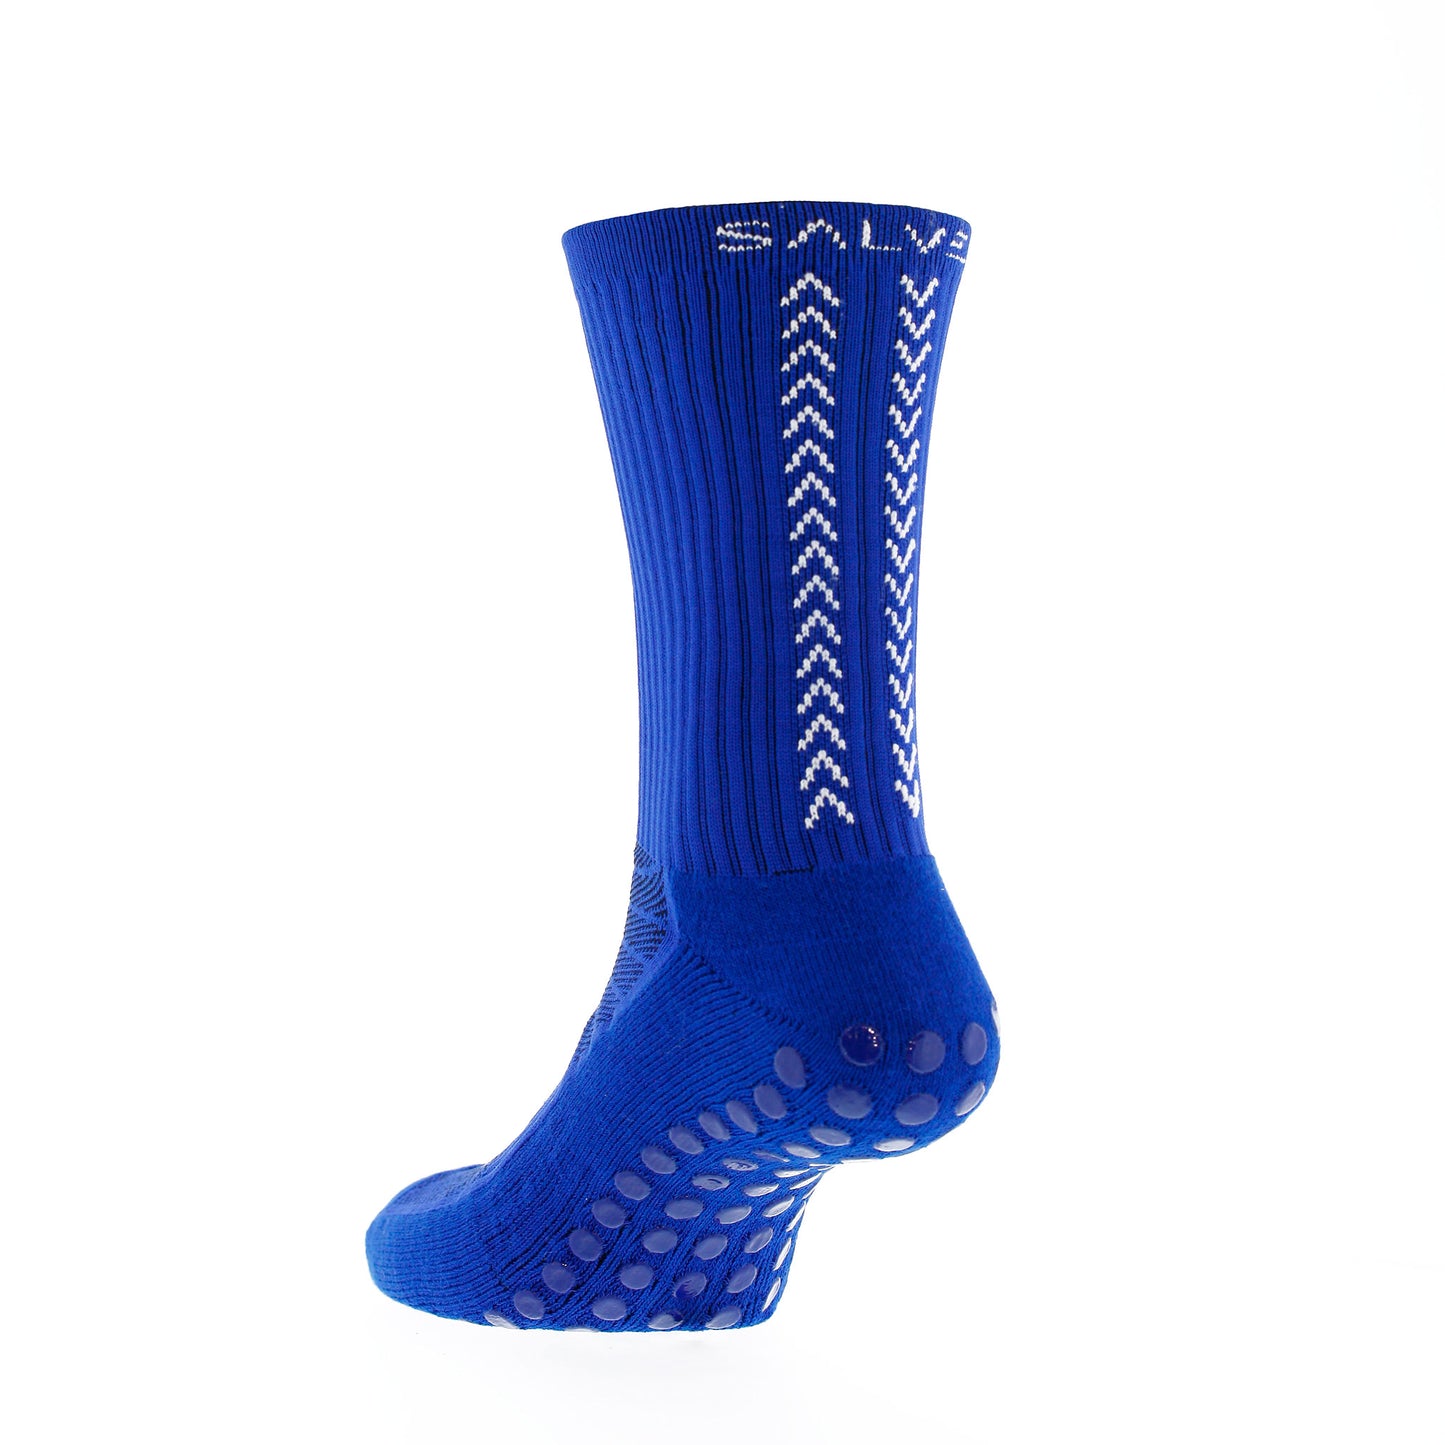 Salve Grip Socken 1.0, blau